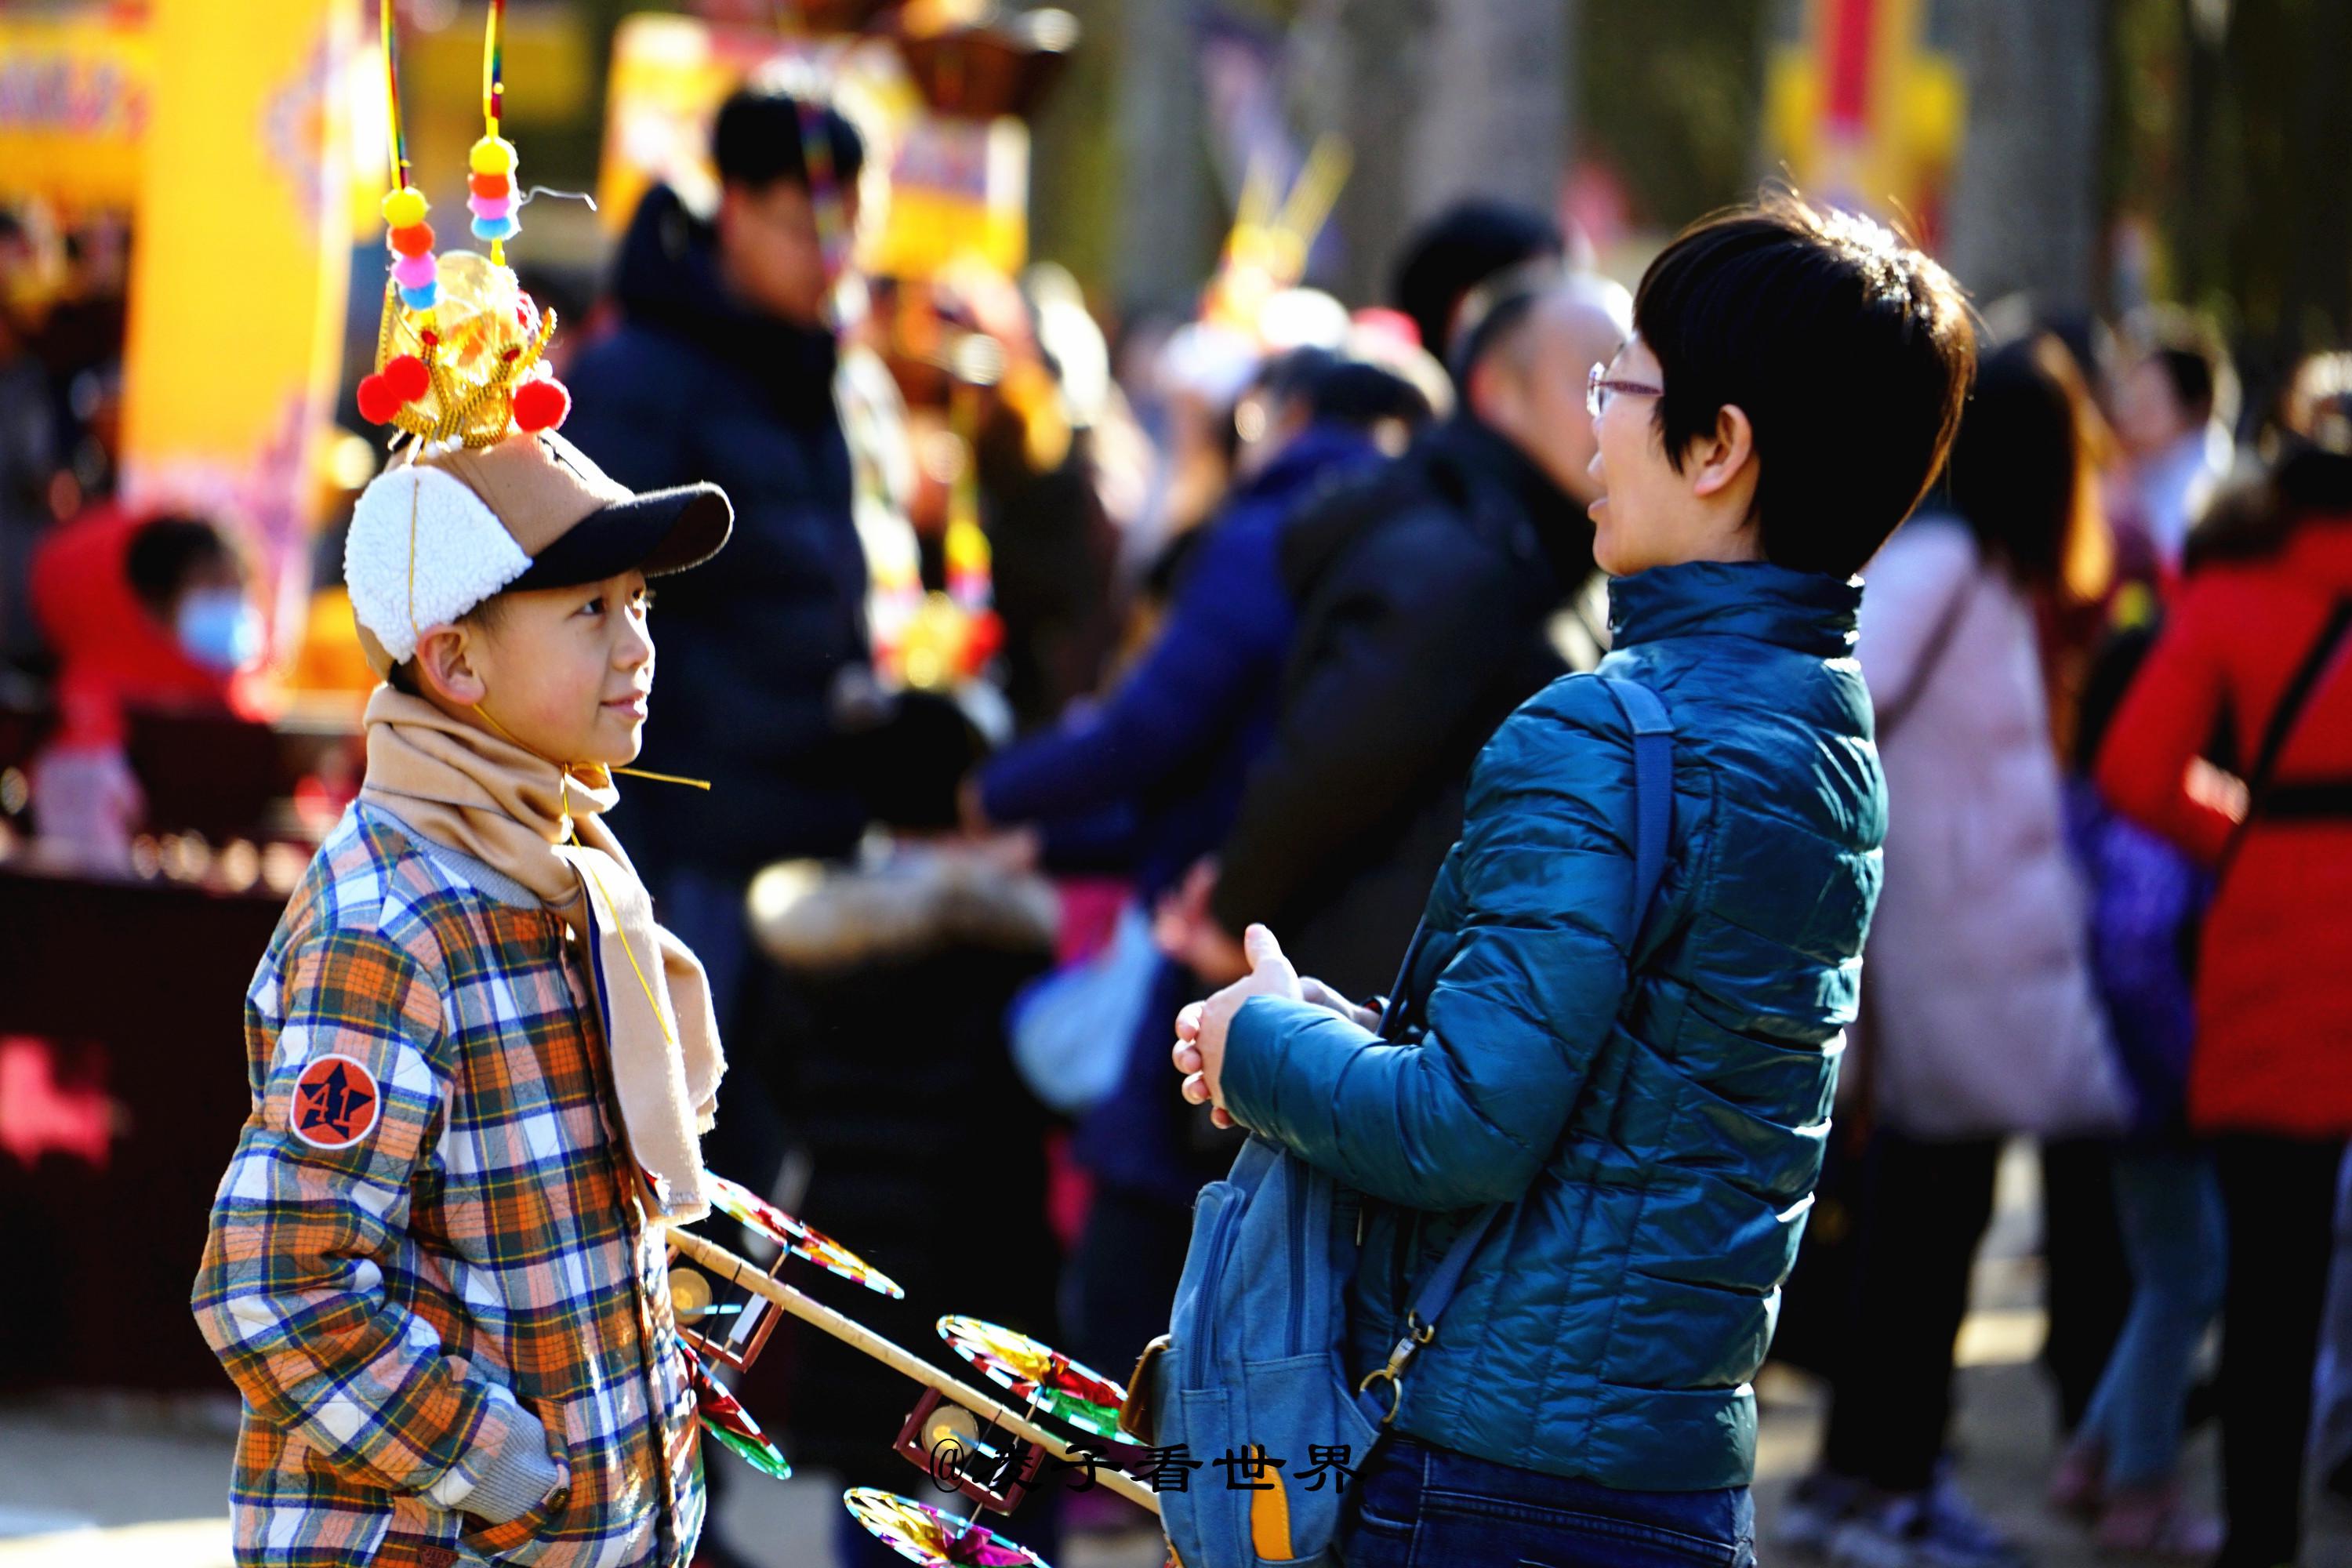 今年的庙会上汇聚了来自台湾,韩国的各种美食,以及哪里的特产,茶叶